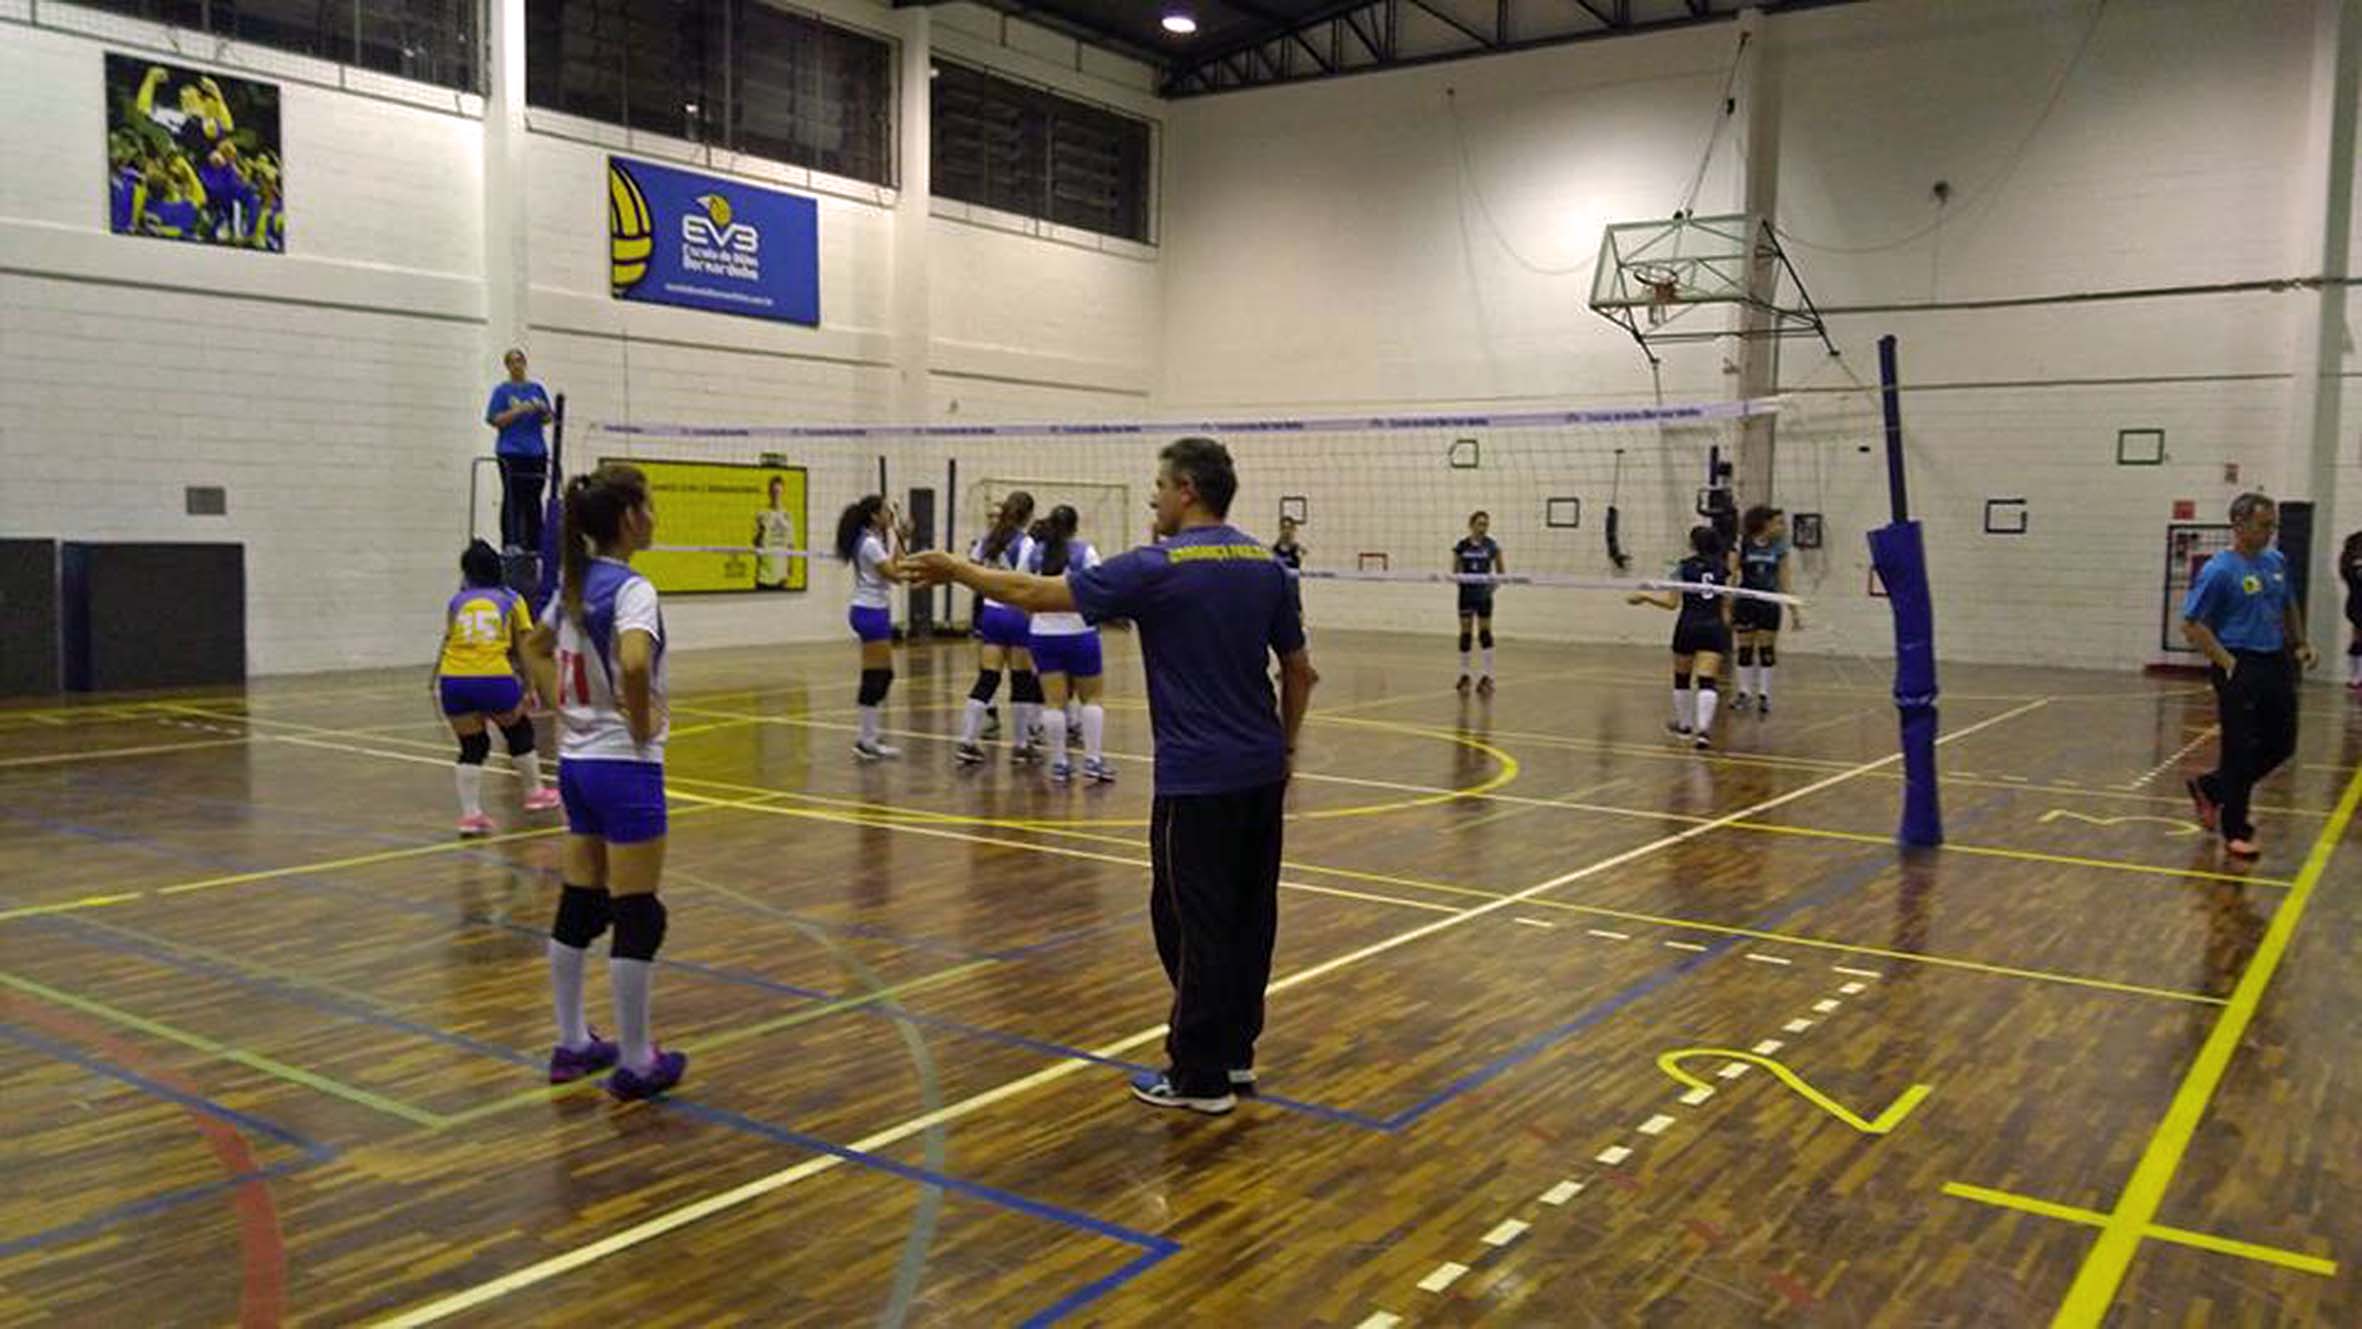 Equipe de vôlei feminino de Bragança Paulista garante vaga nas